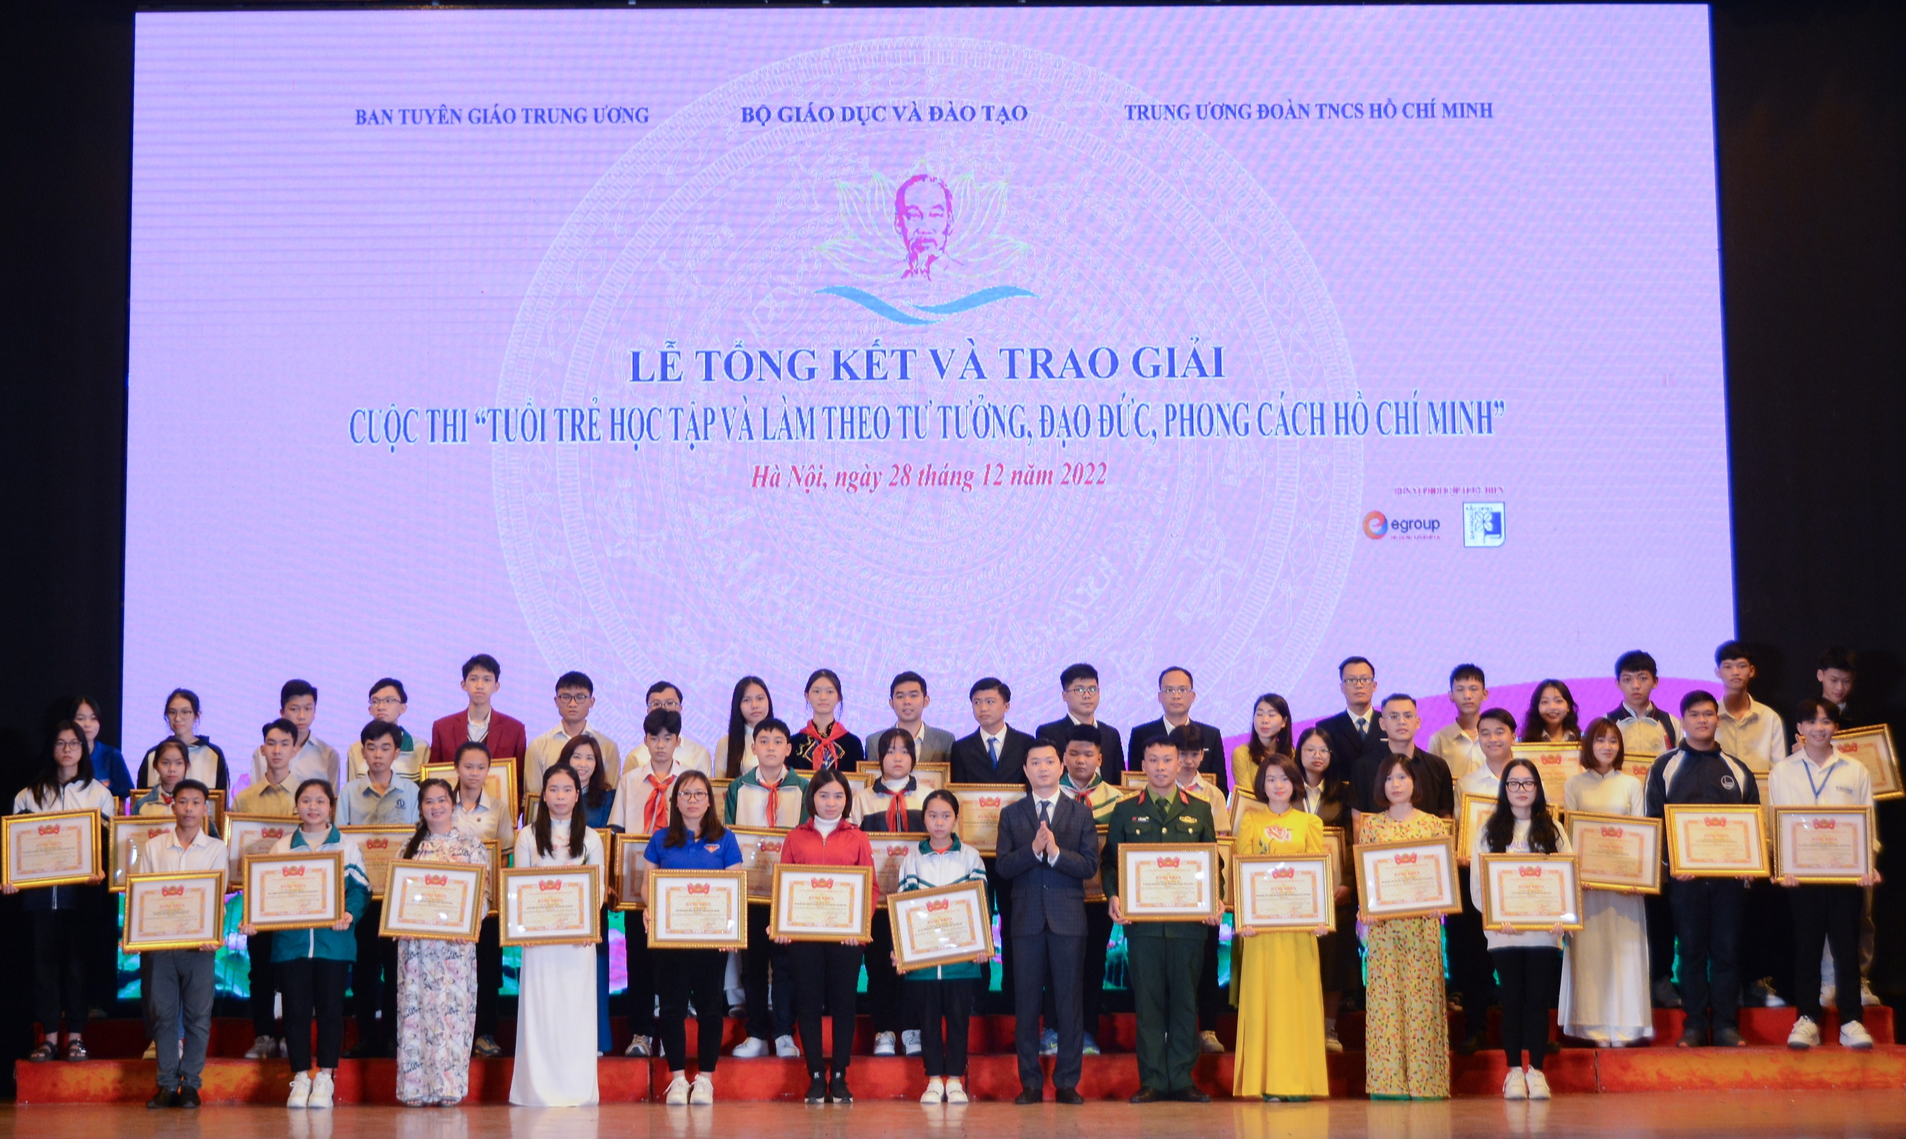 1,7 triệu thí sinh dự thi 'Tuổi trẻ học tập và làm theo tư tưởng, đạo đức, phong cách Hồ Chí Minh' - Ảnh 1.